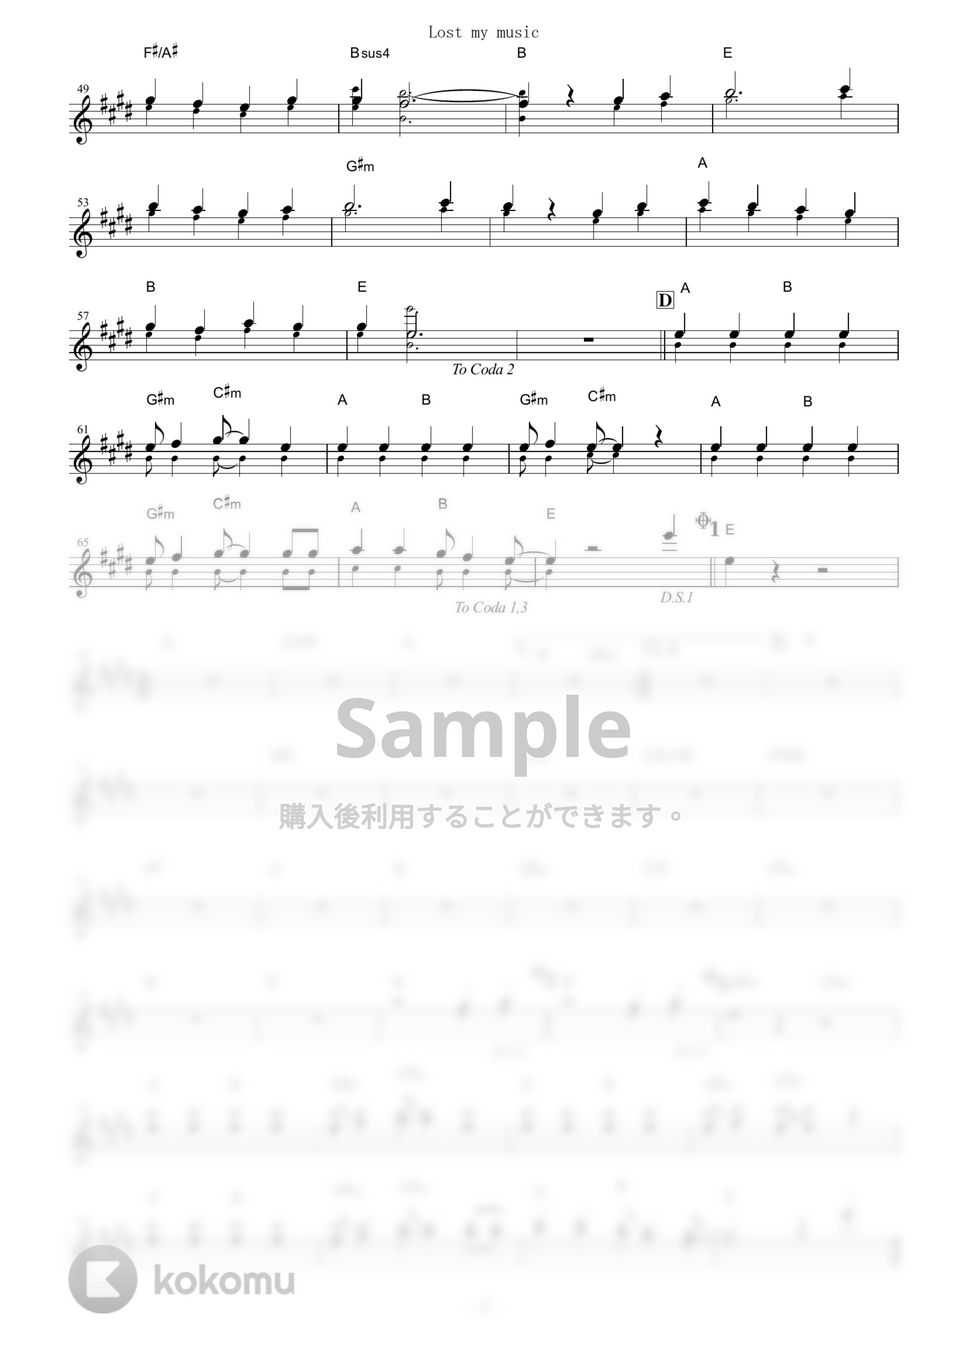 平野綾 - Lost my music (『涼宮ハルヒの憂鬱』 / in C) by muta-sax